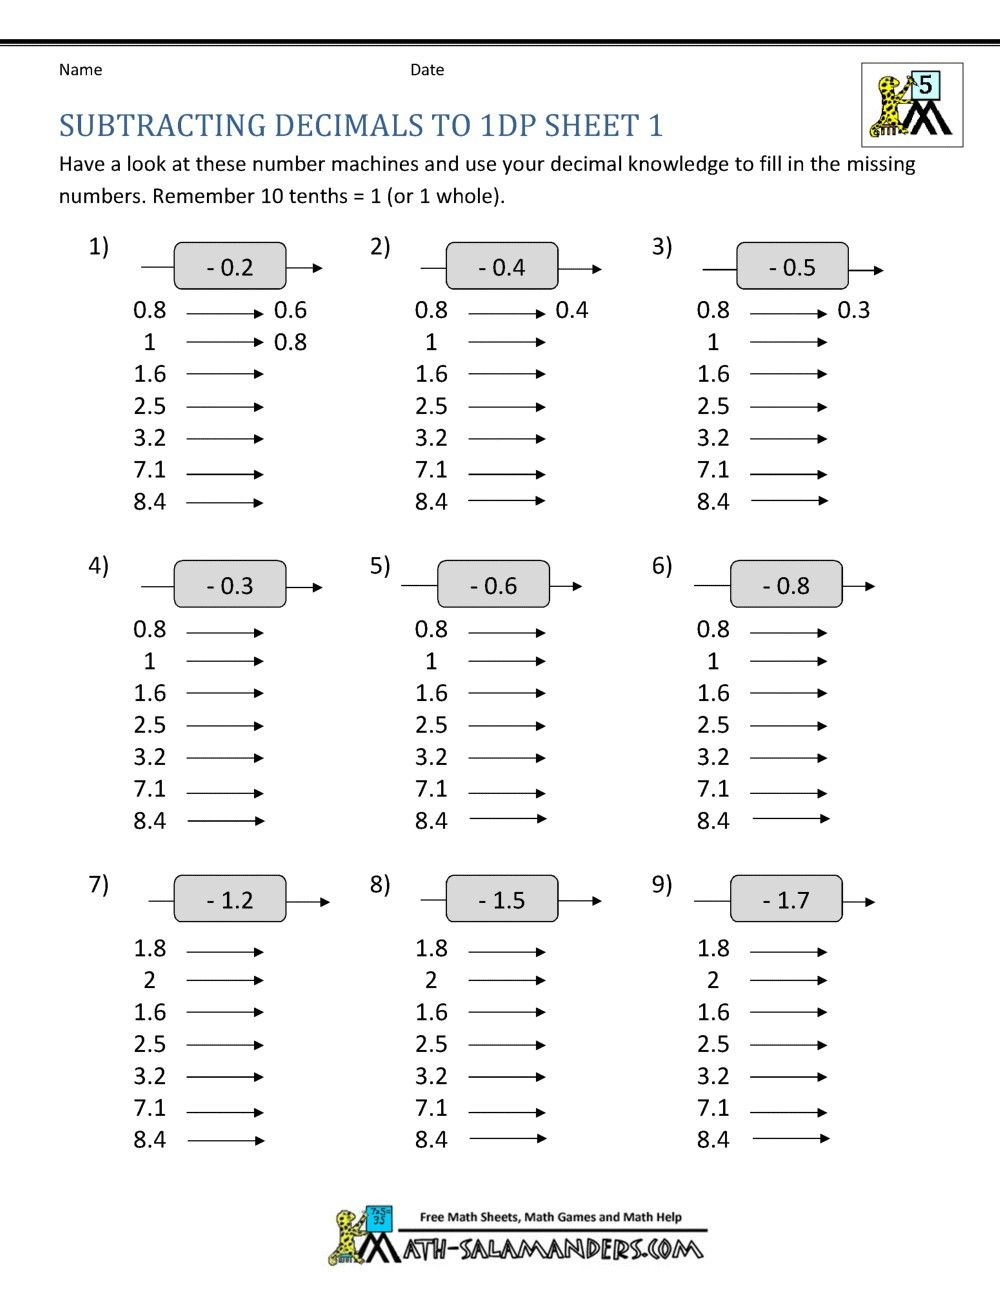 multiplication-practice-worksheets-0-3-multiplication-worksheets